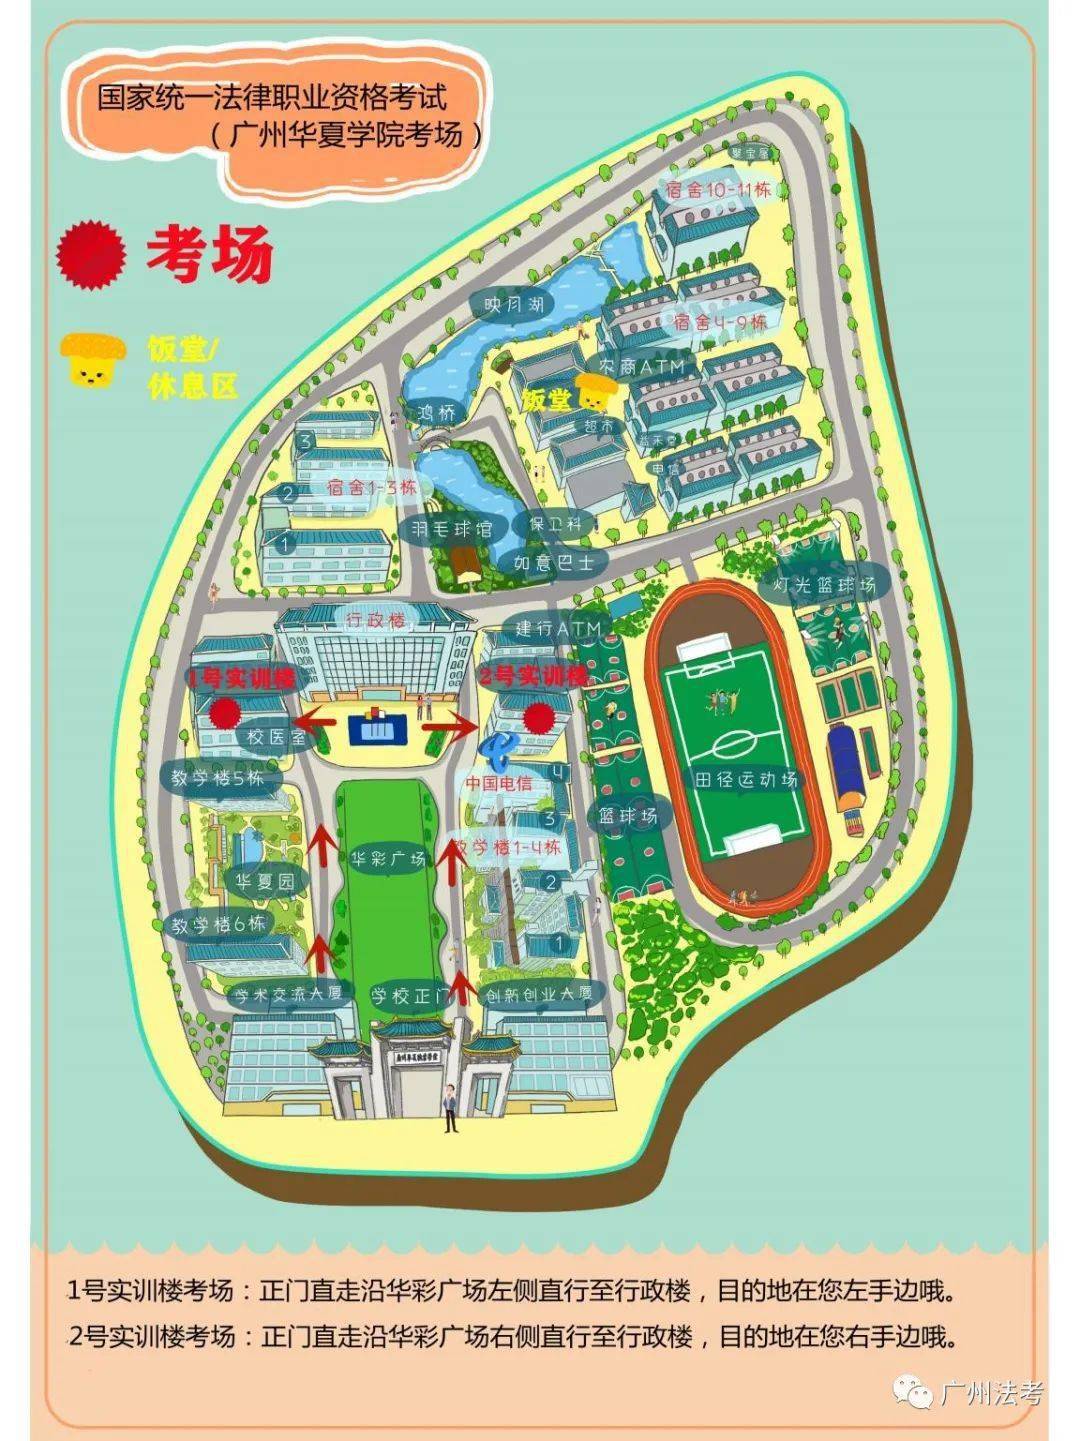 广州商学院平面地图图片